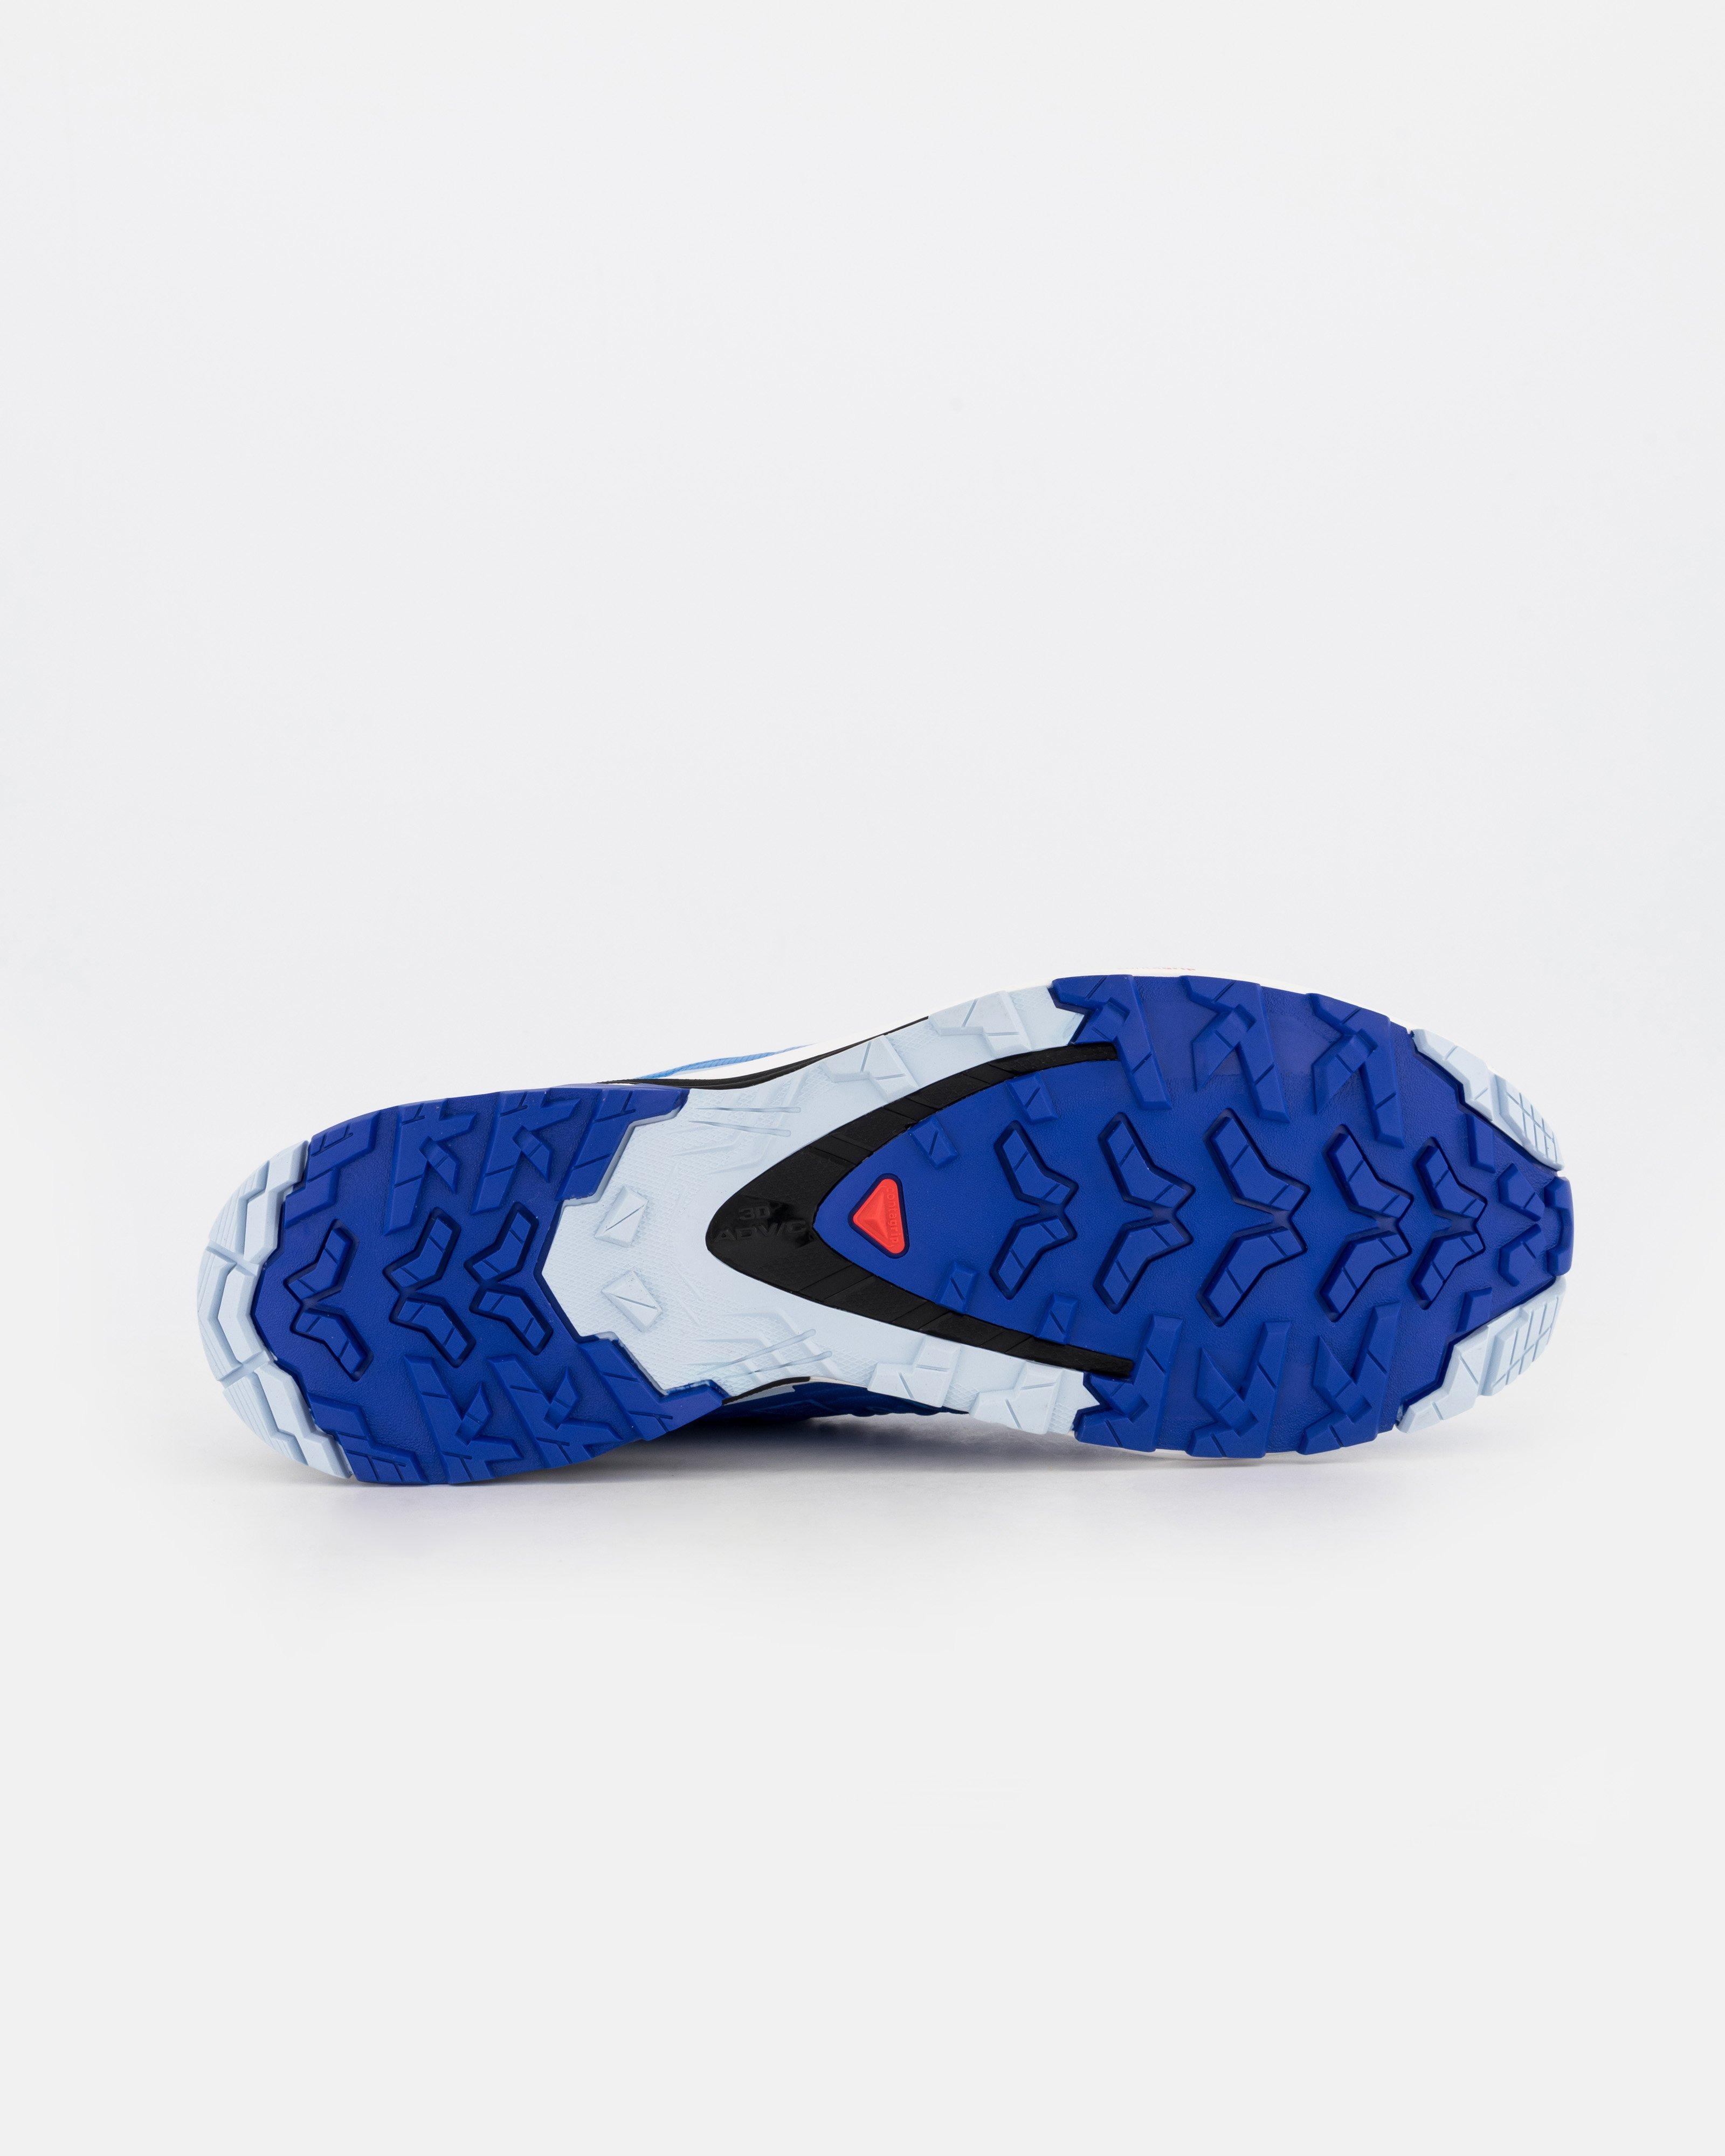 Salomon Men's XA Pro 3D V9 Trail Running Shoes -  Blue